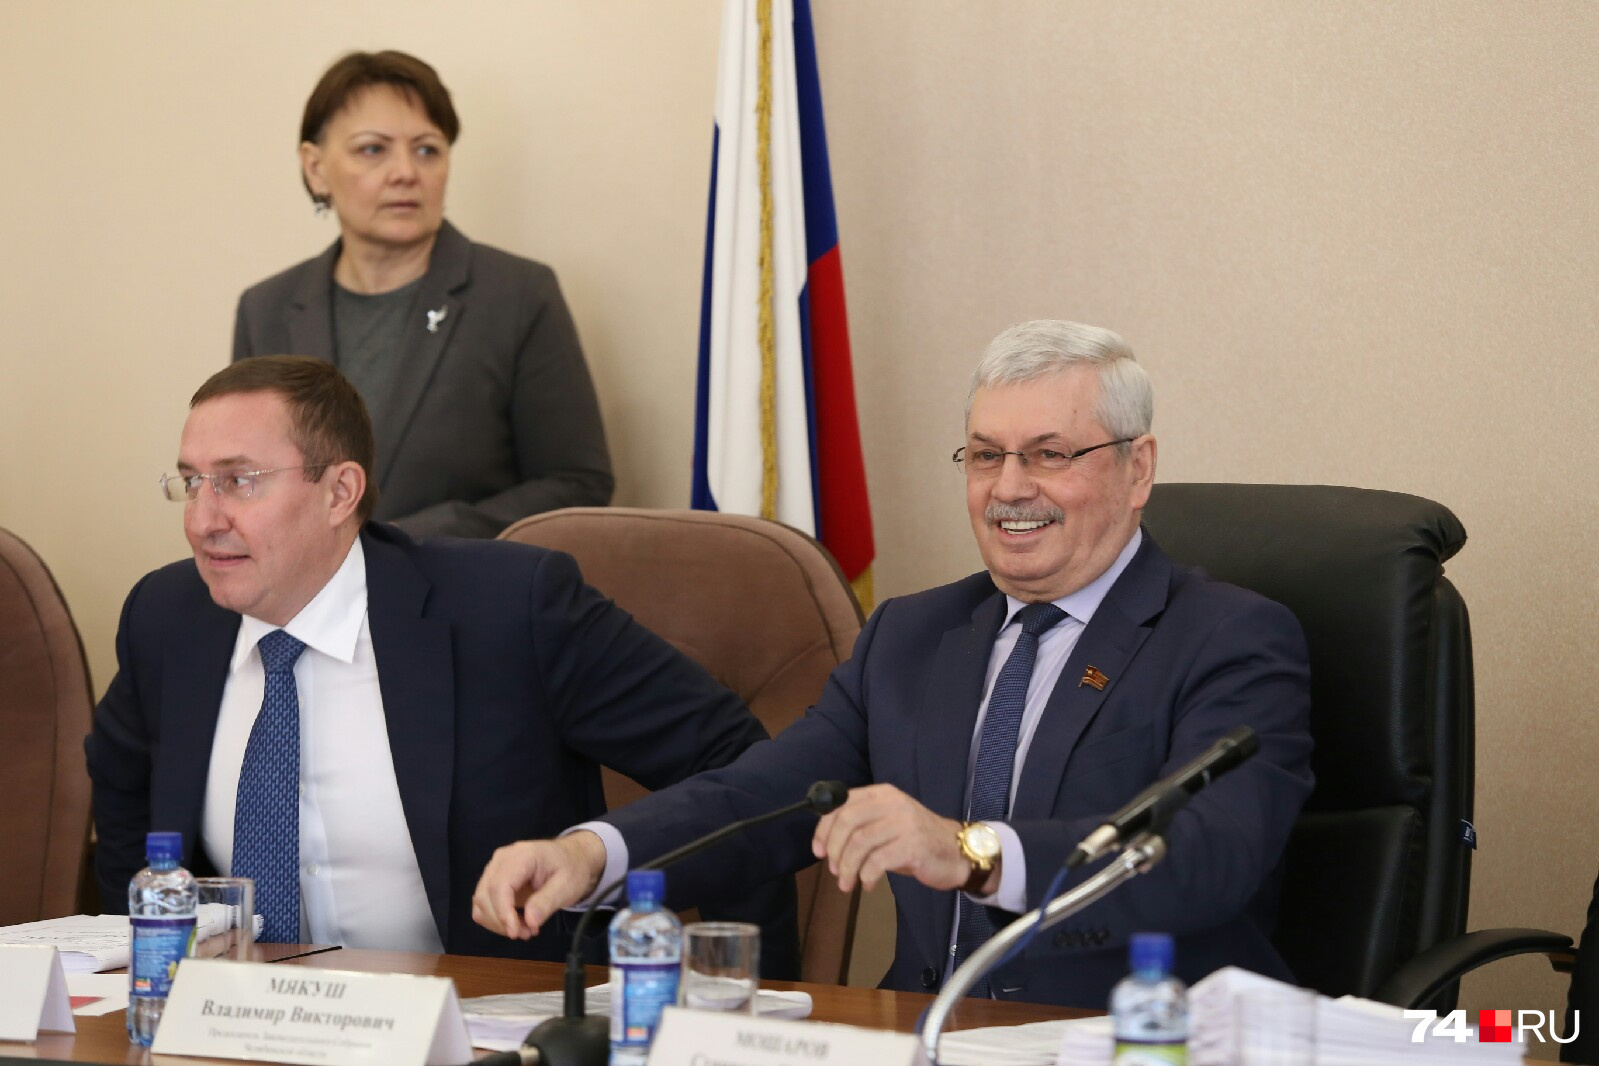 Владимир Мякуш (справа) пребывает в прекрасном расположении духа, по всей видимости, заранее уверен в результате голосования